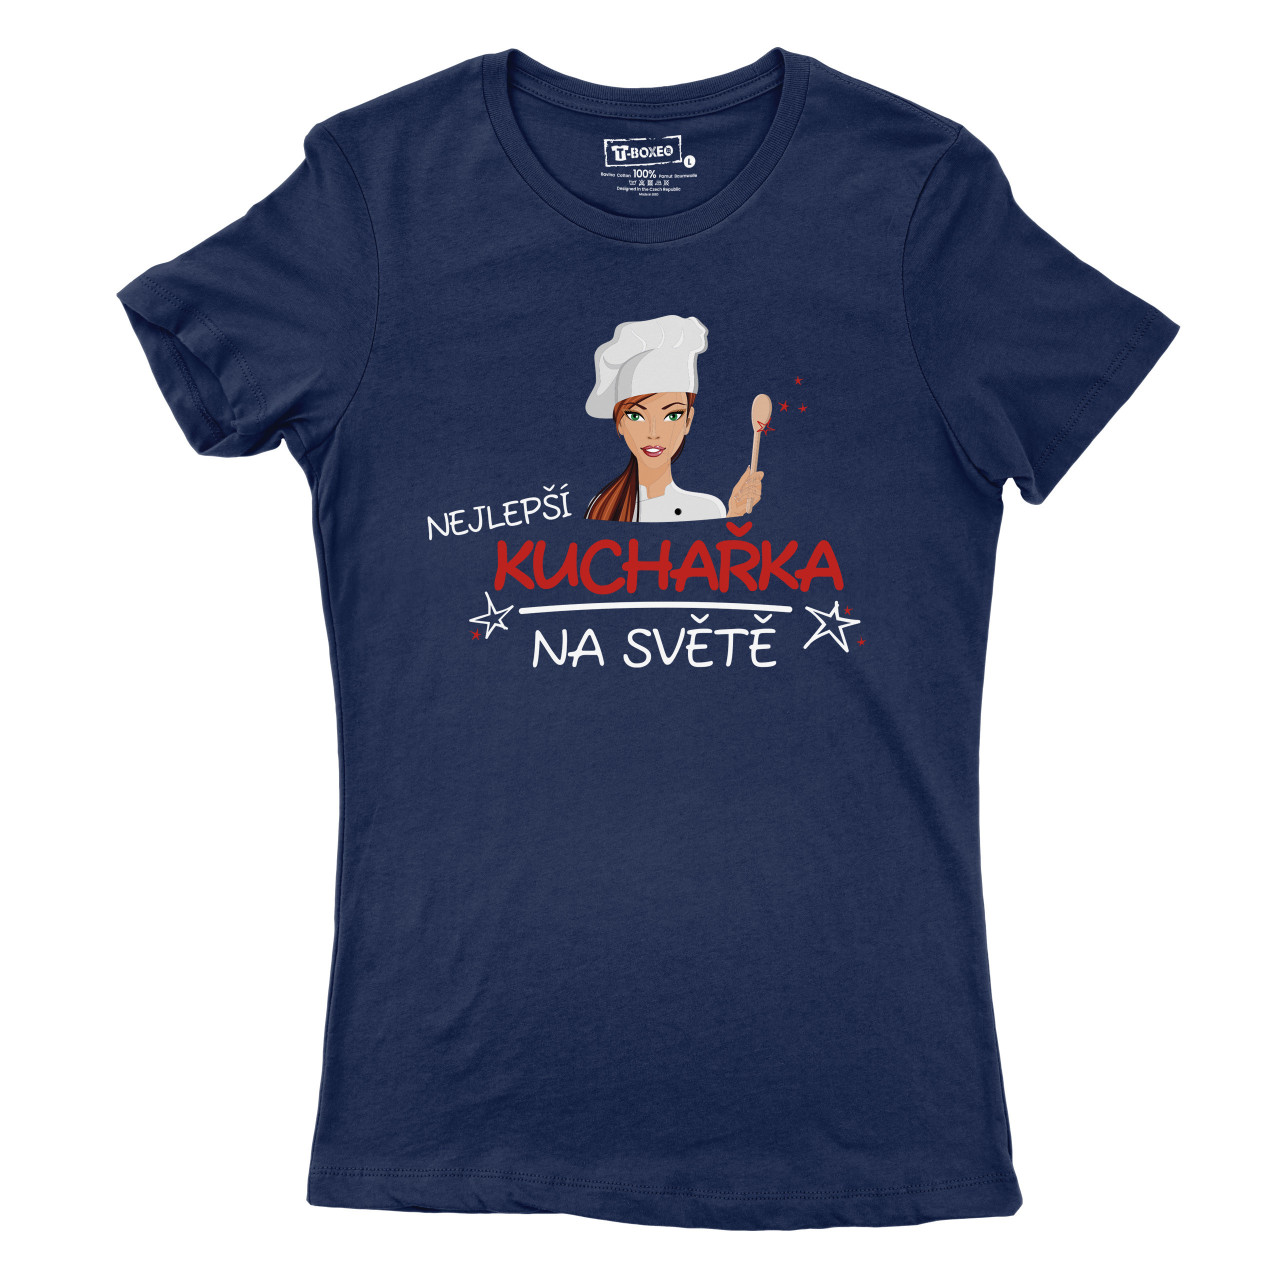 Dámské tričko s potiskem "Nejlepší kuchařka na světě"